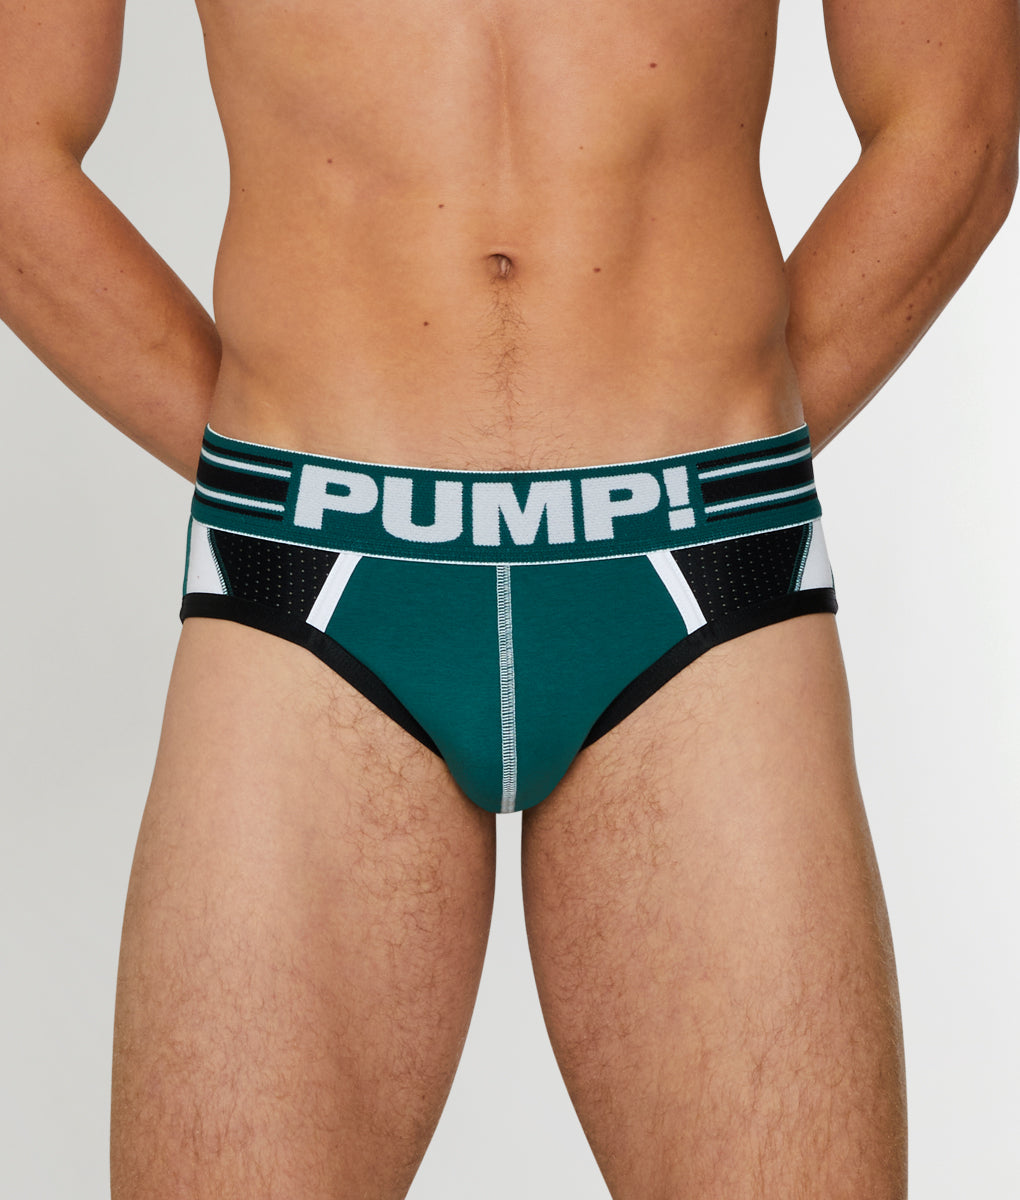 pump underwear